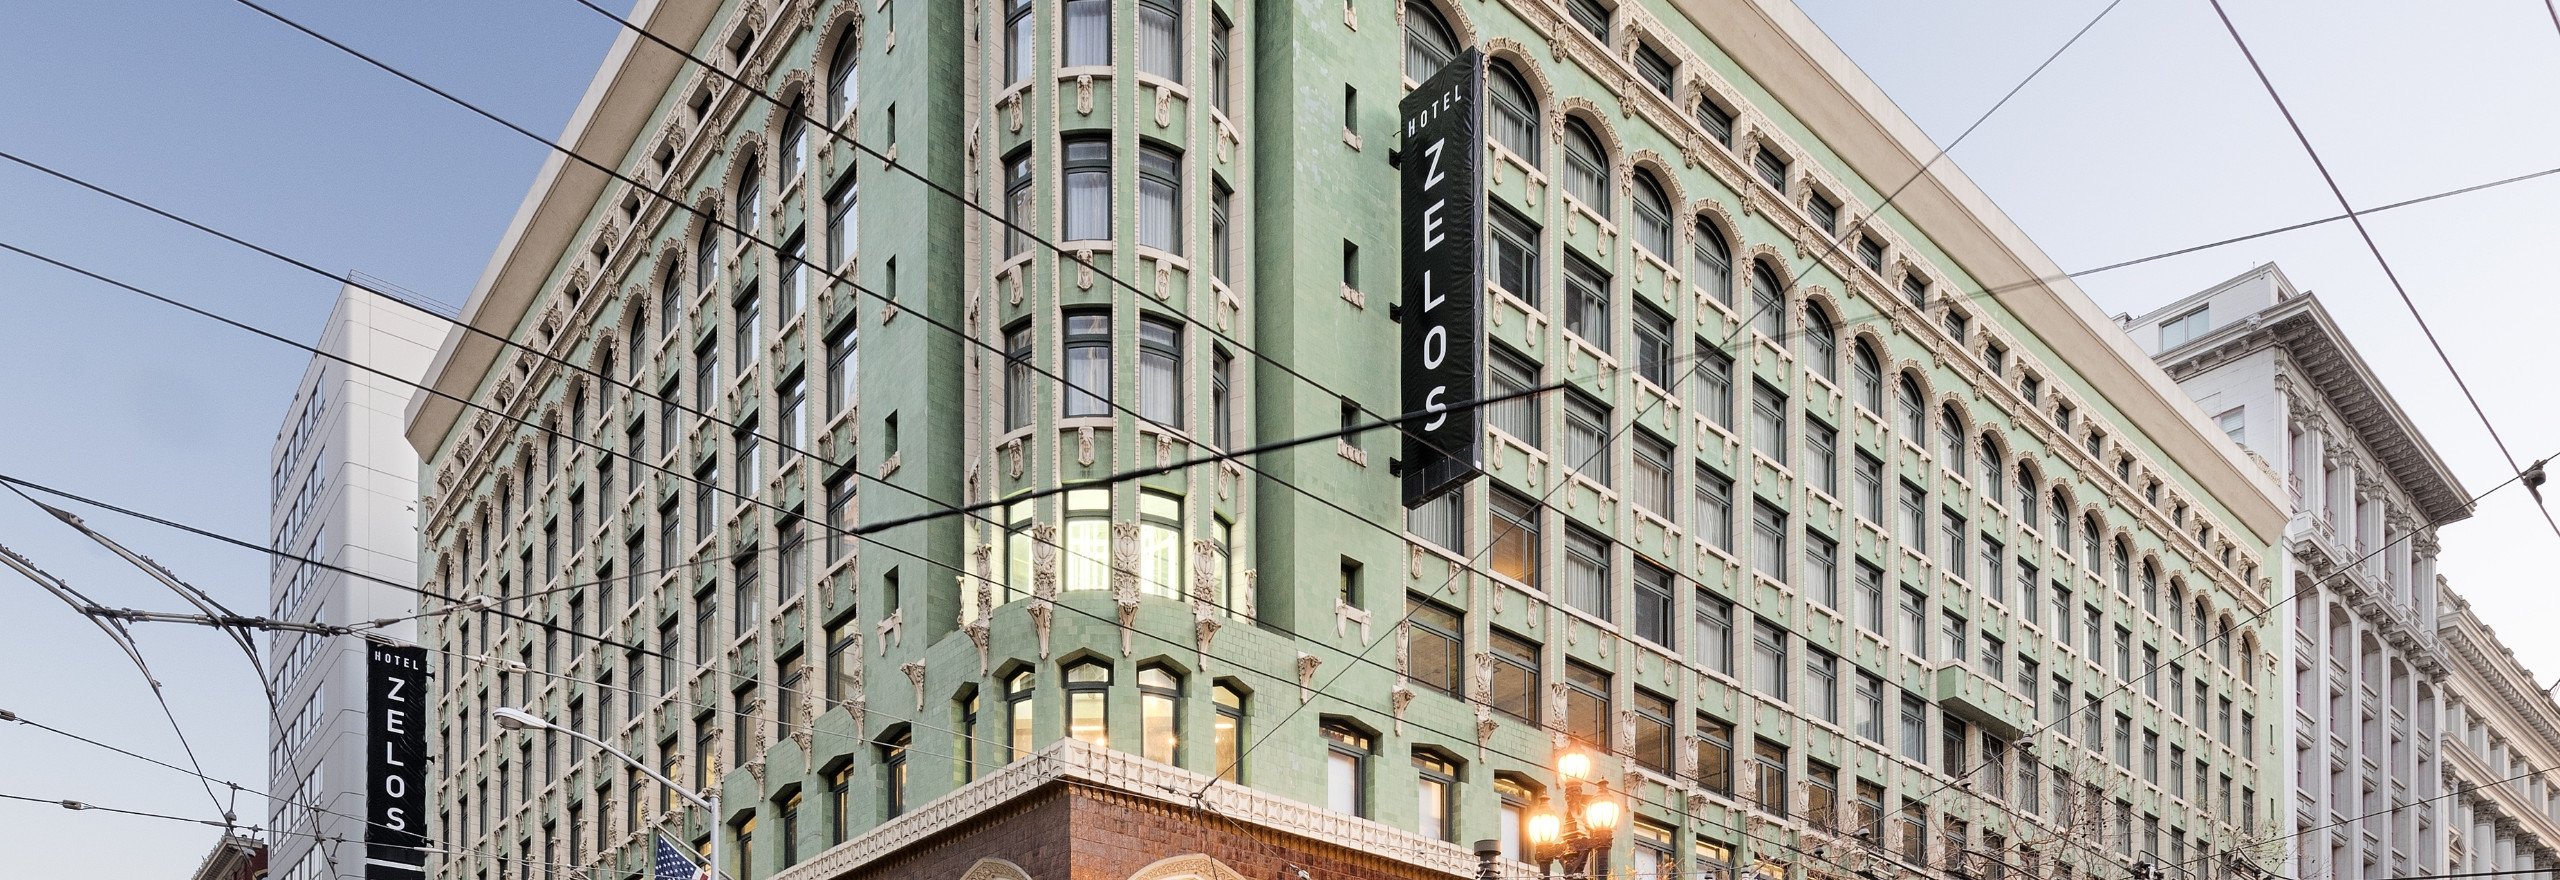 Hotel Zelos in San Francisco